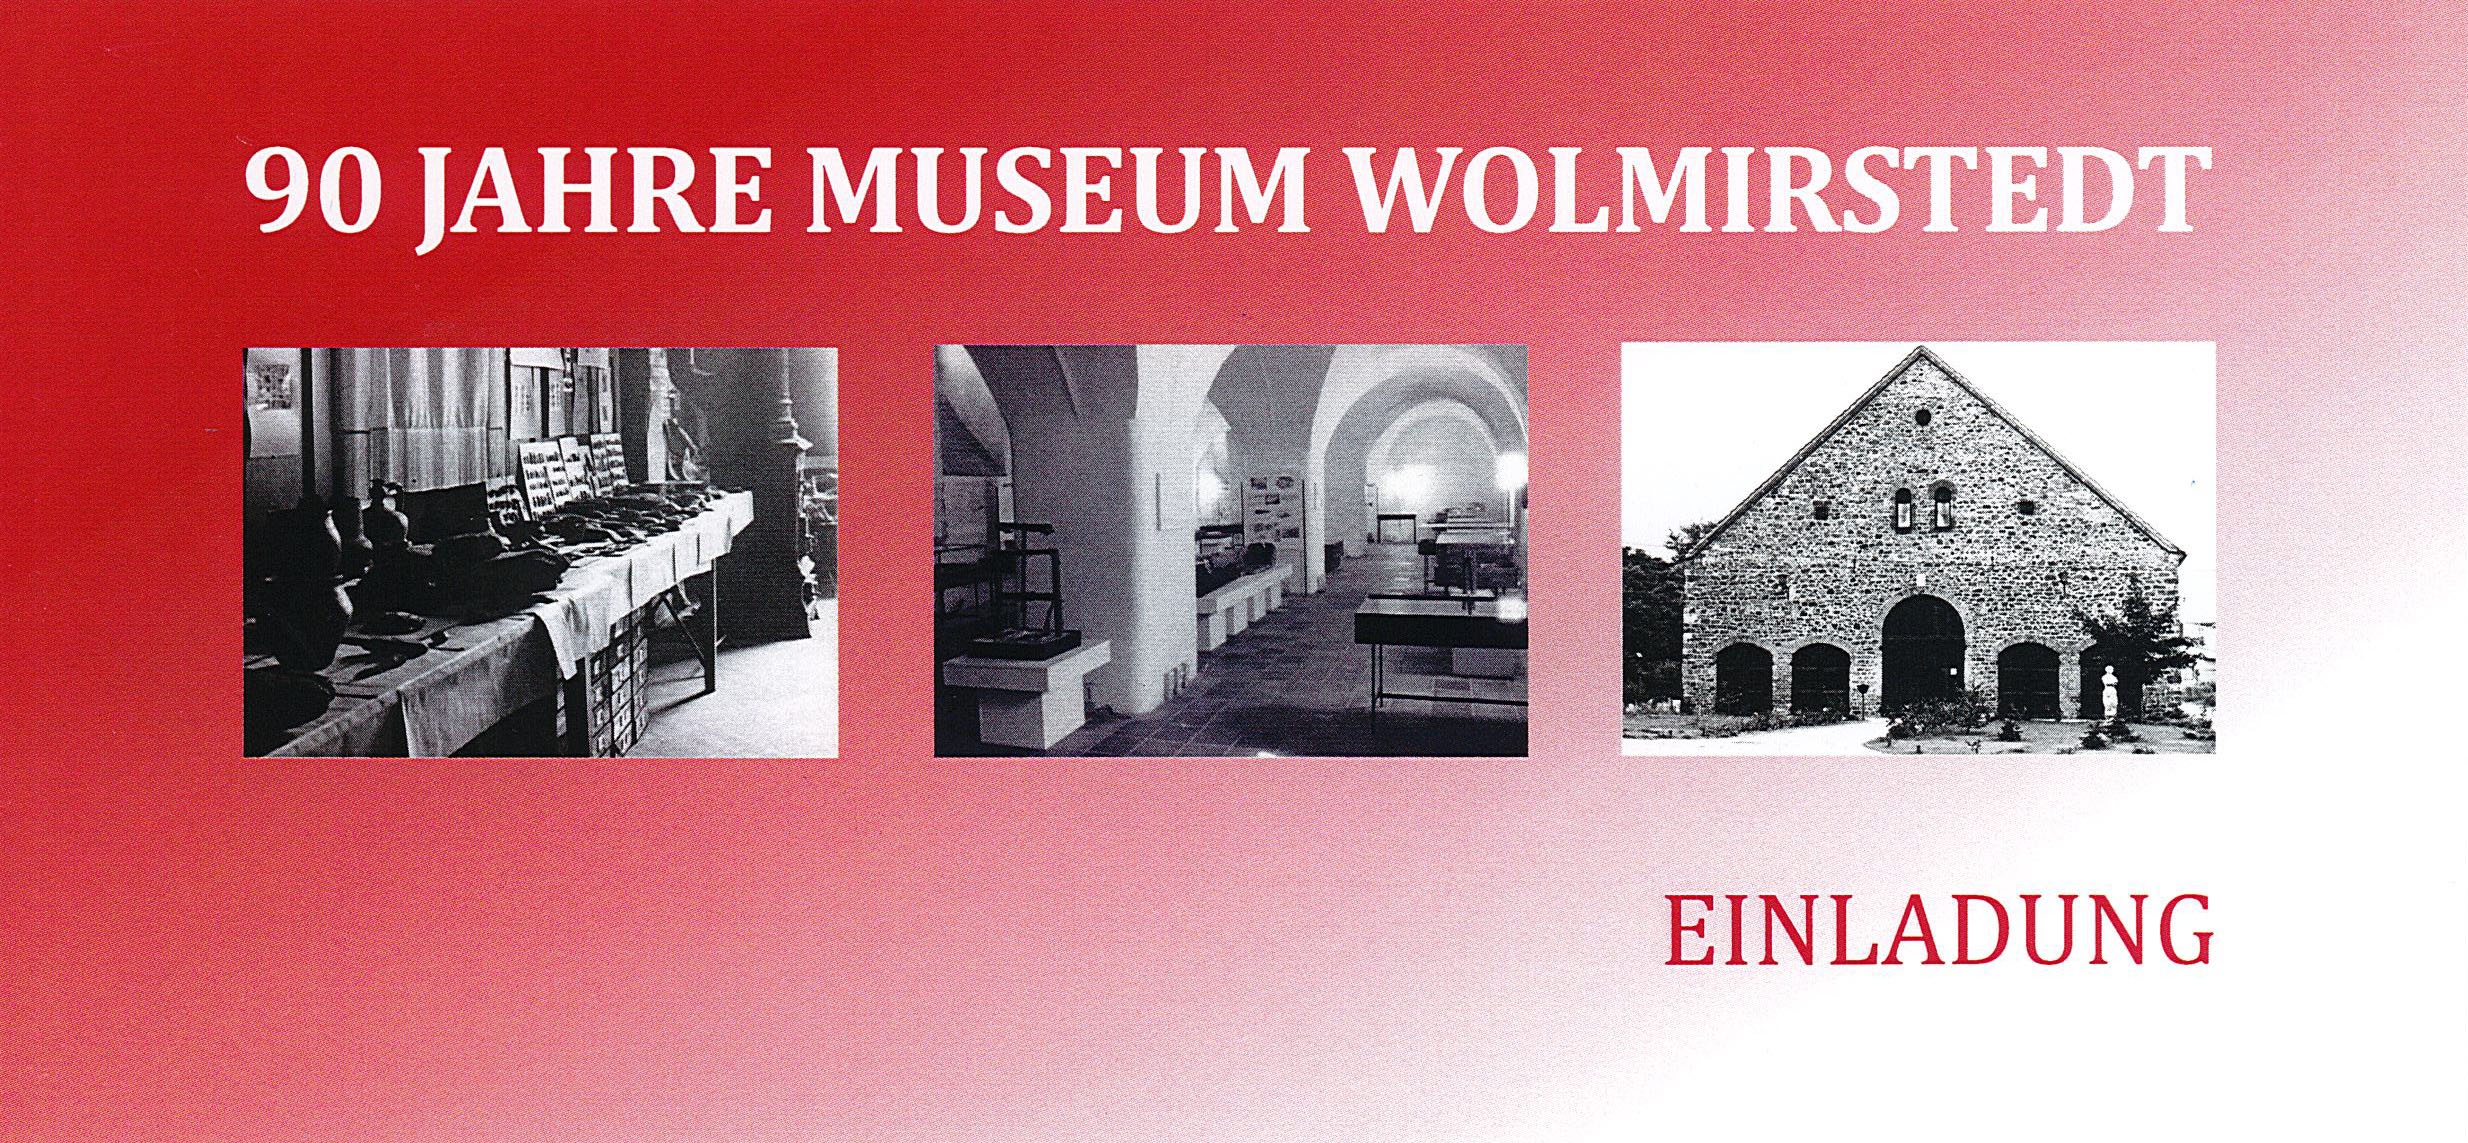 Einladung "90 Jahre Museum Wolmirstedt", 15.11.2017 (Museum Wolmirstedt RR-F)